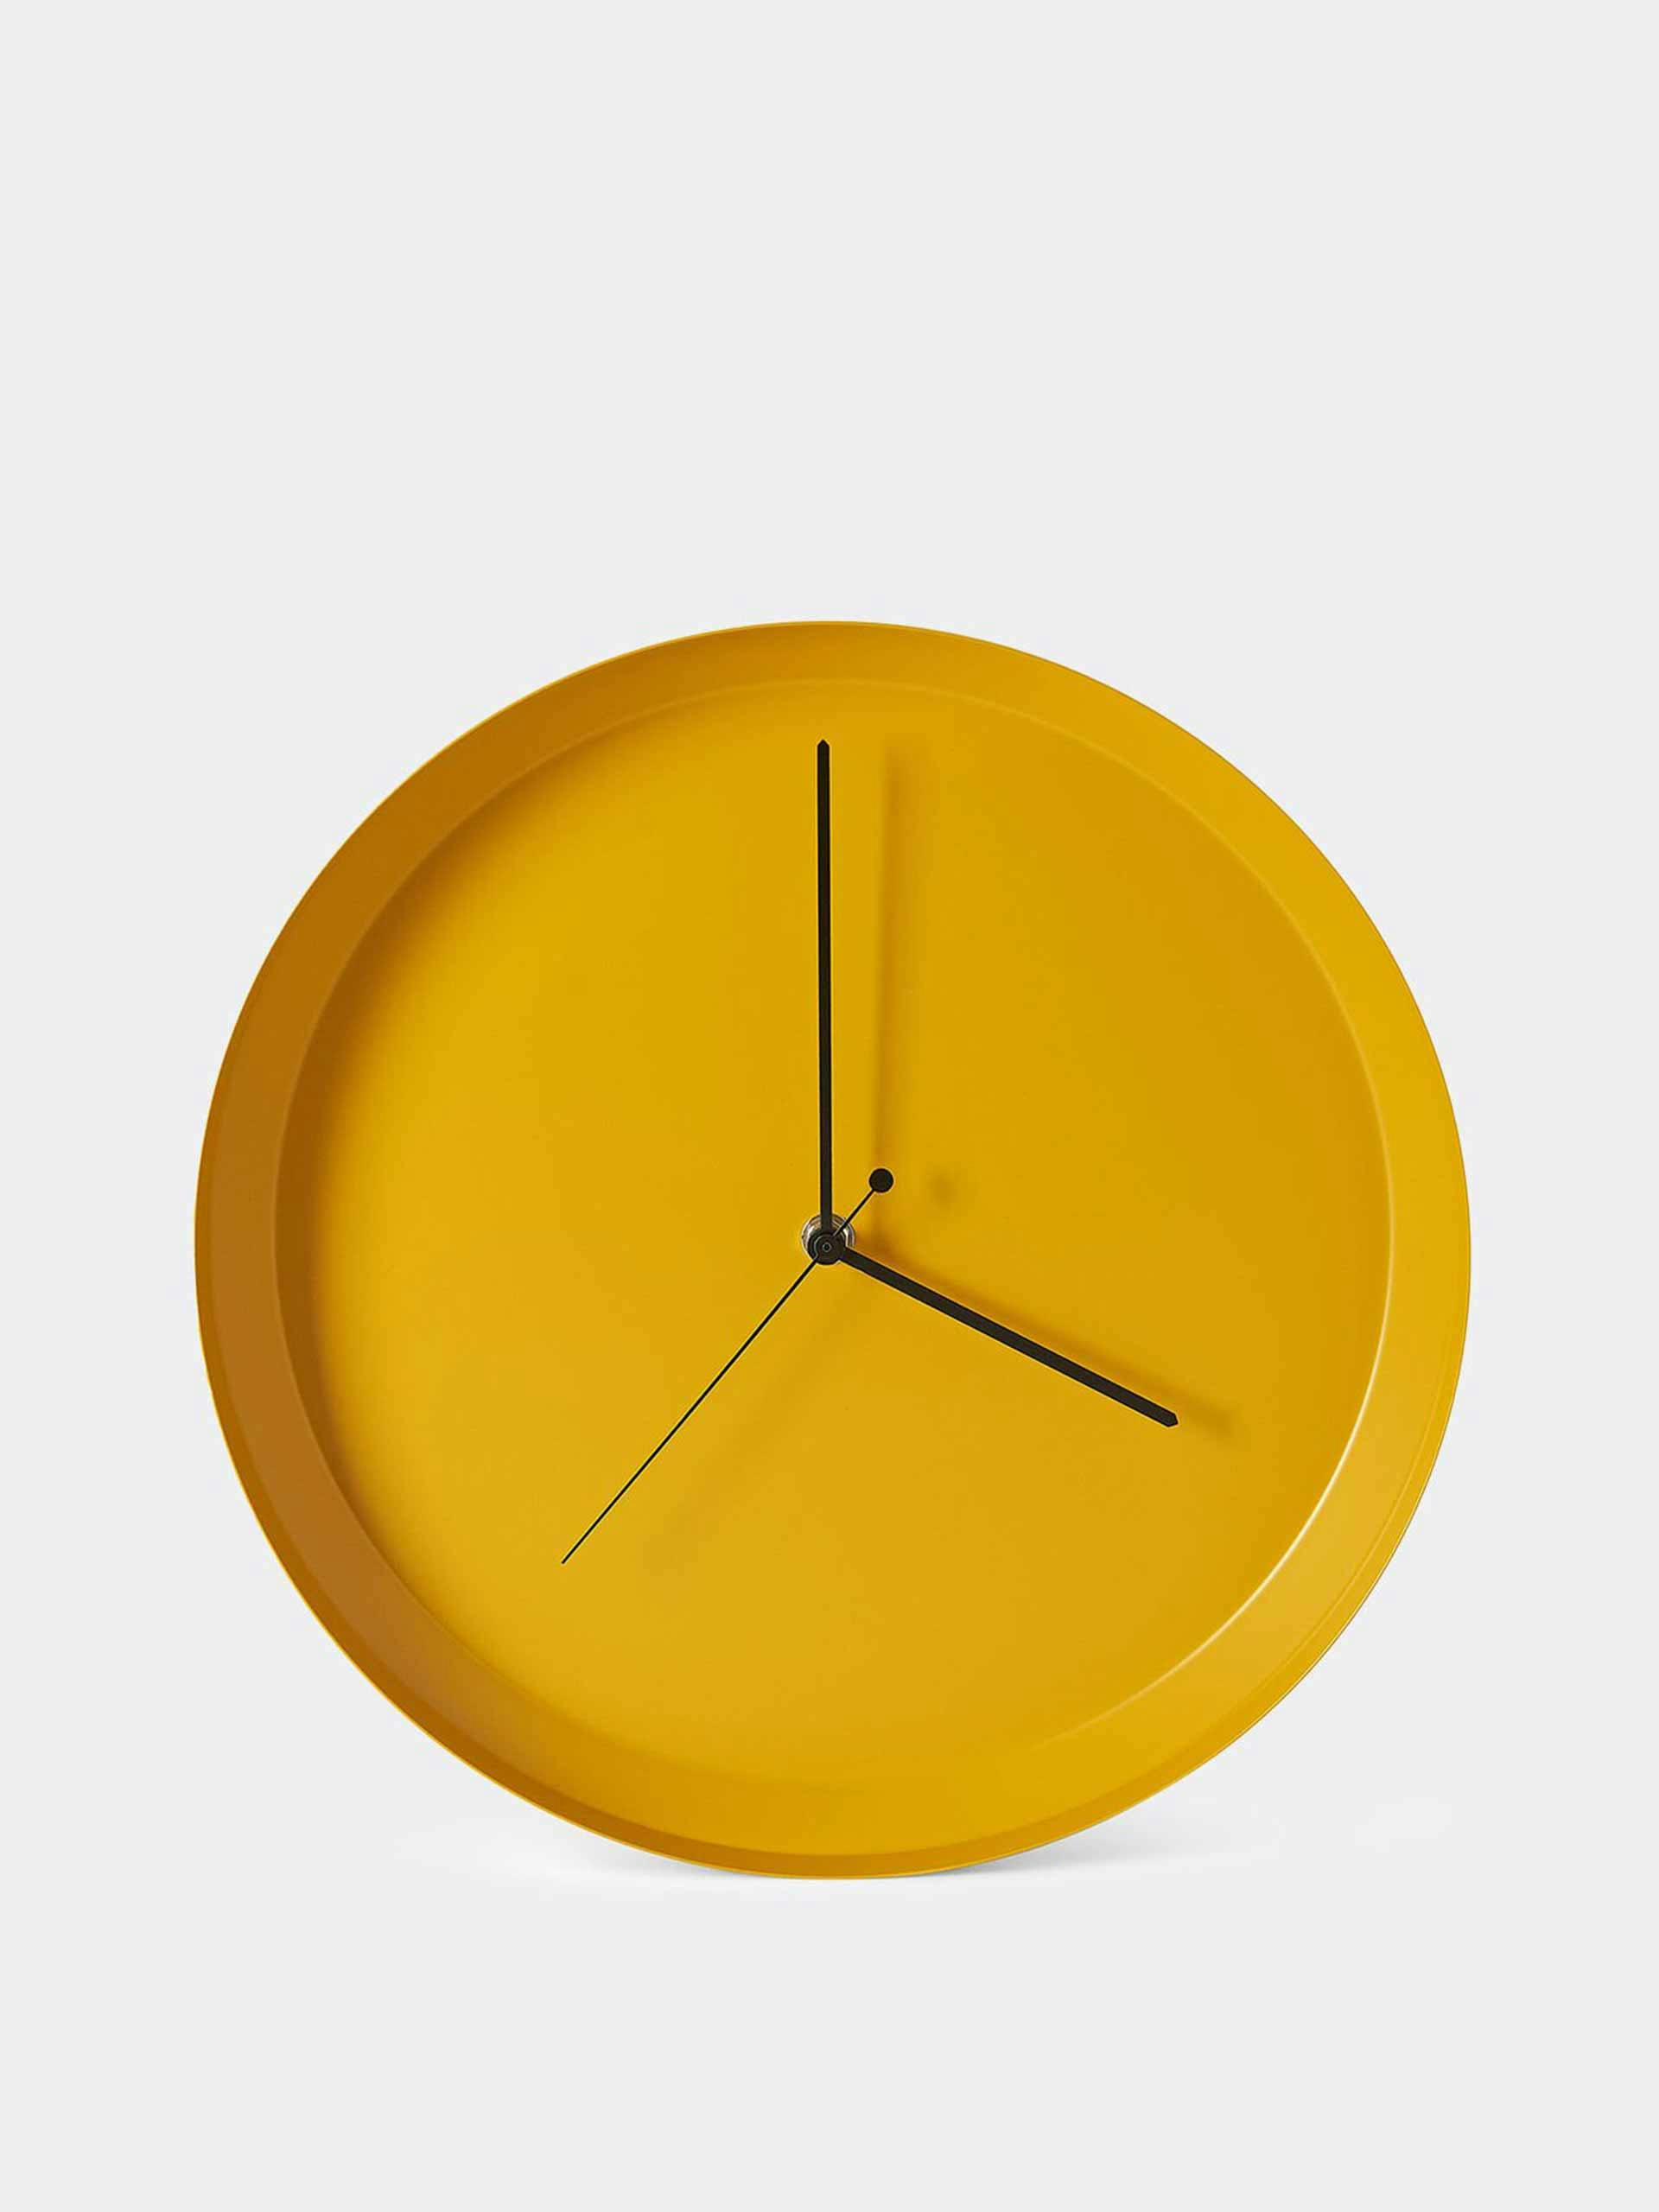 Yellow dish wall clock